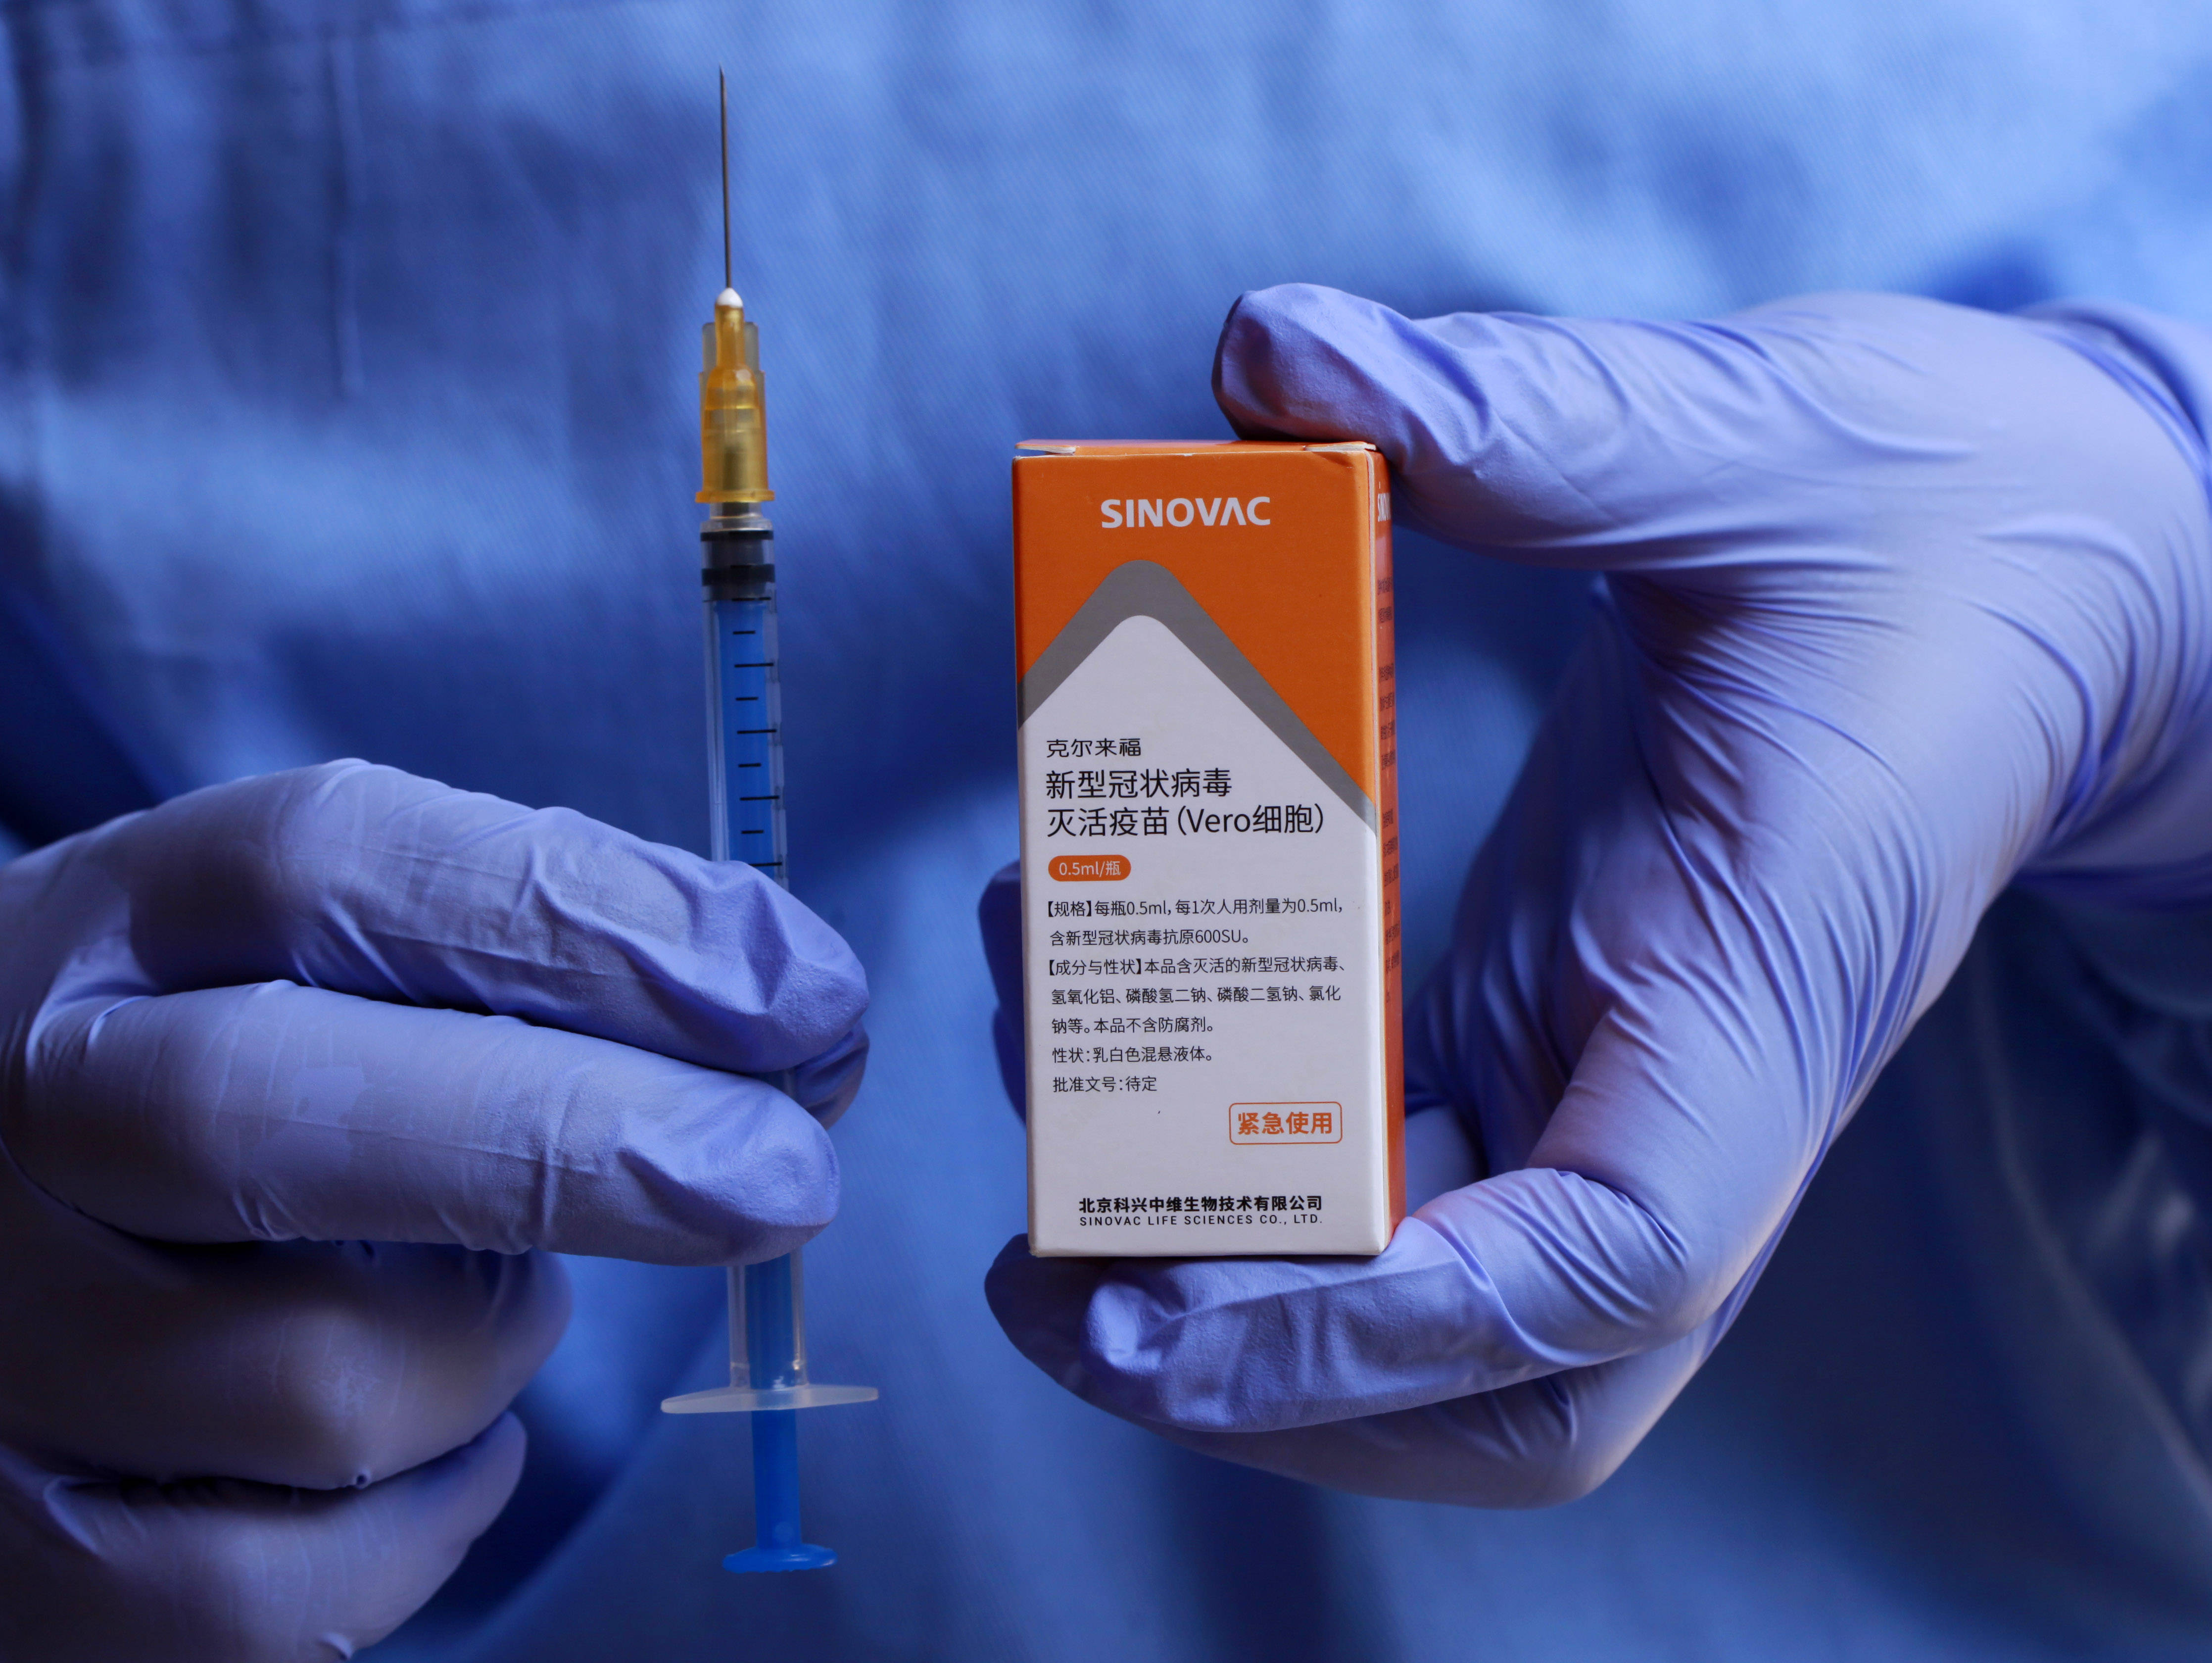 科兴新冠疫苗瓶子图片图片